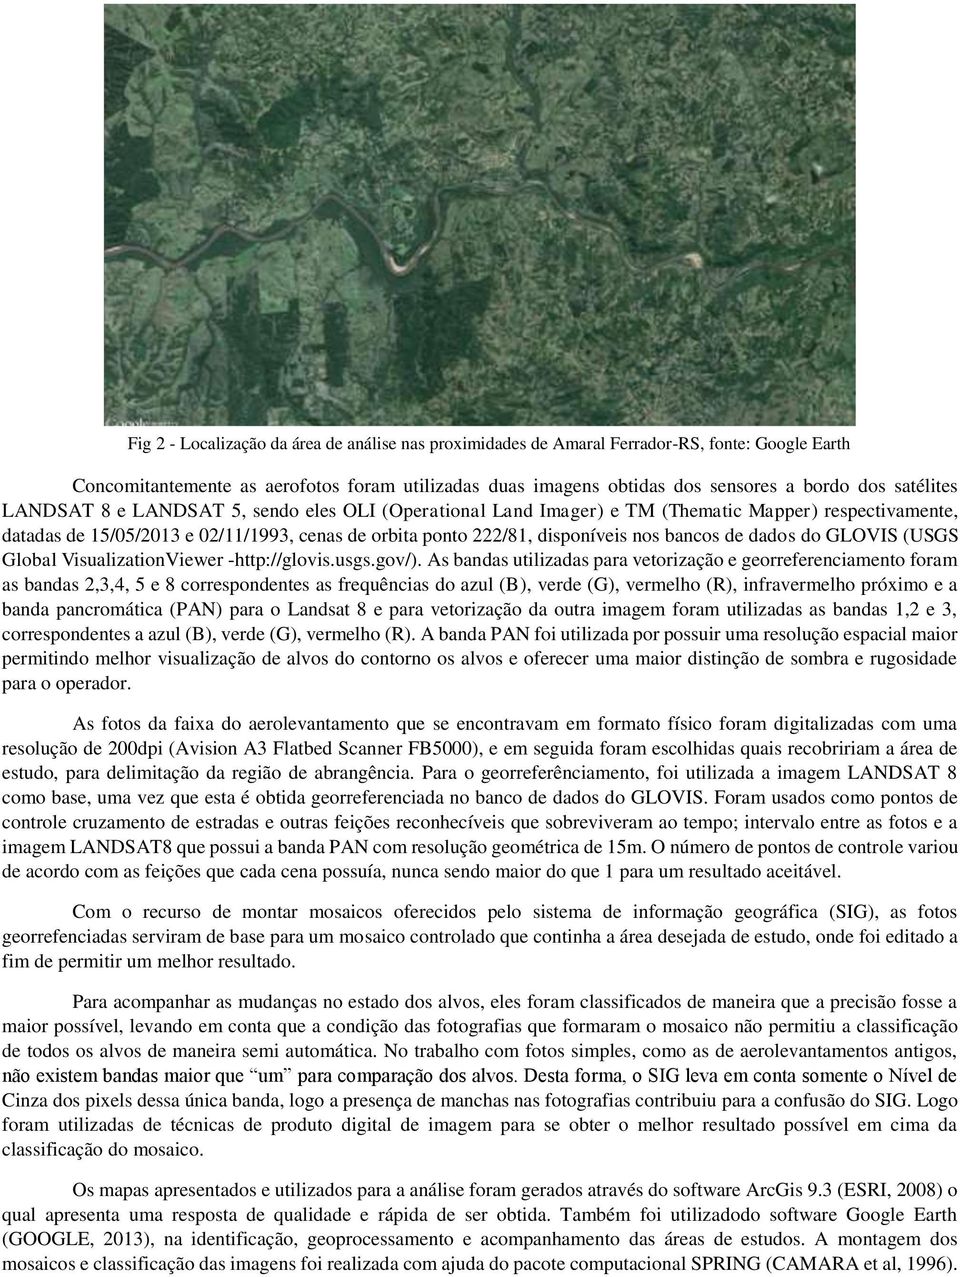 bancos de dados do GLOVIS (USGS Global VisualizationViewer -http://glovis.usgs.gov/).